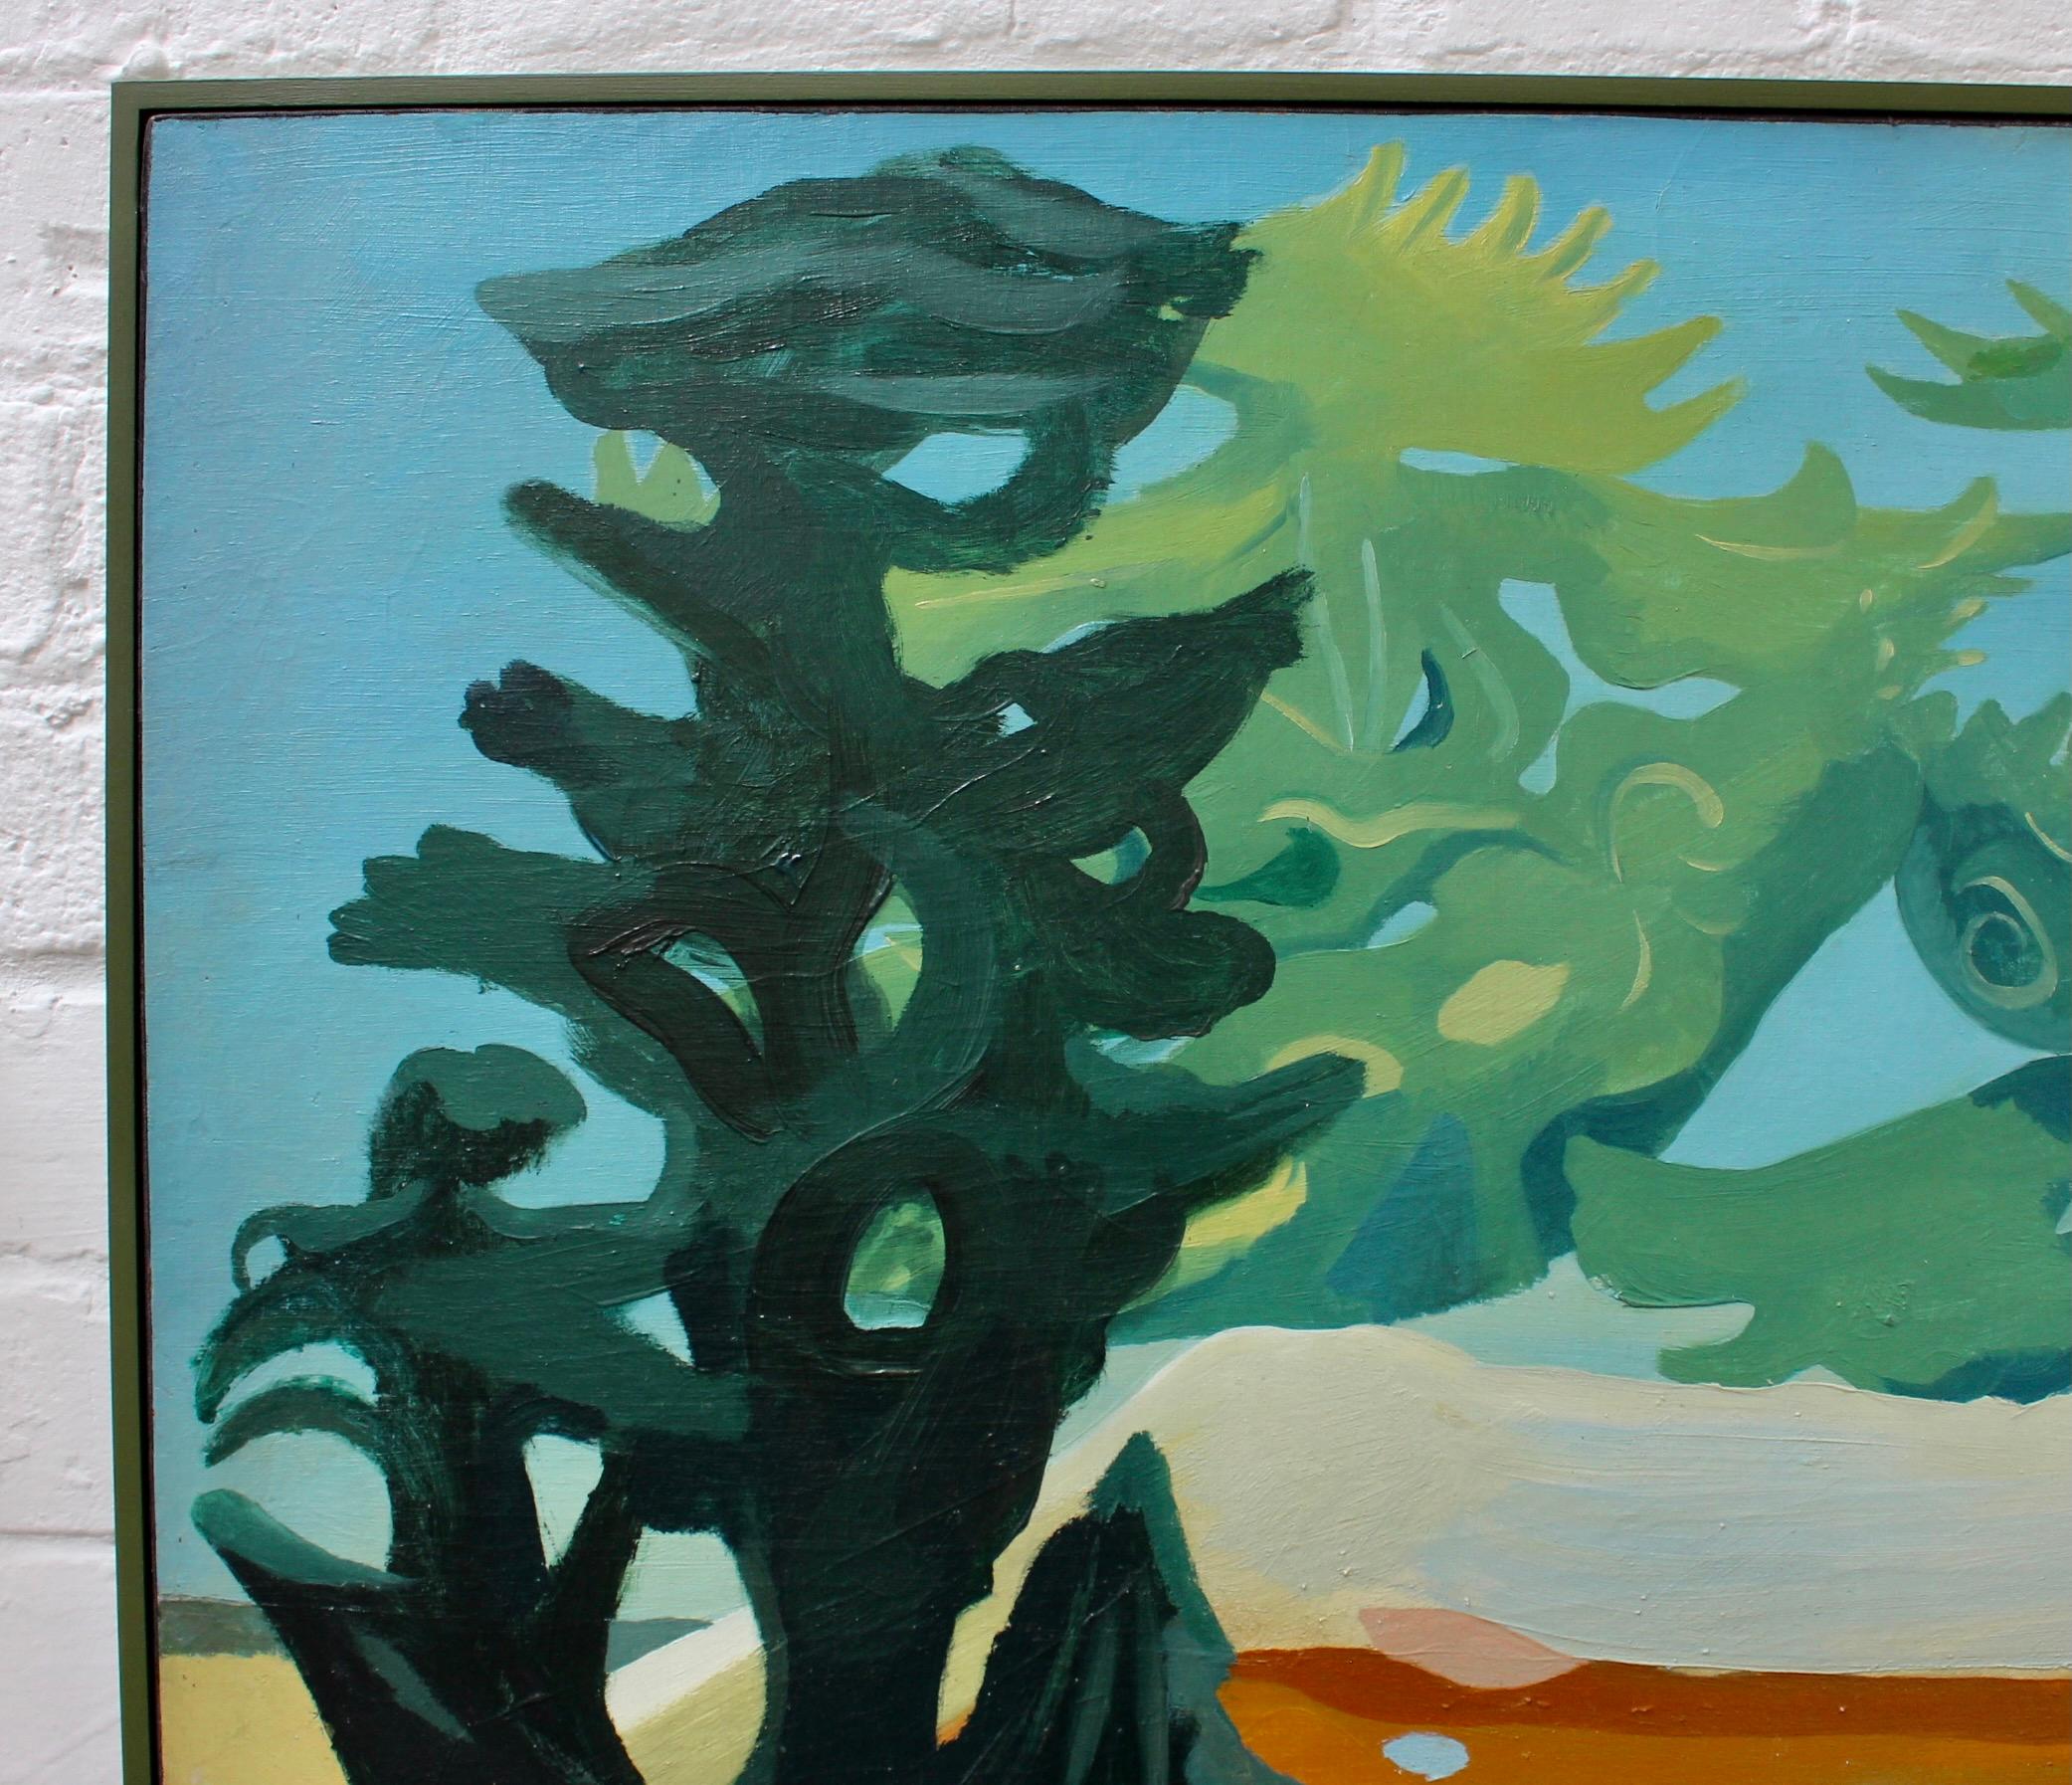 Charaktere in einer surrealistischen Landschaft (Schwarz), Landscape Painting, von Lucien Coutaud